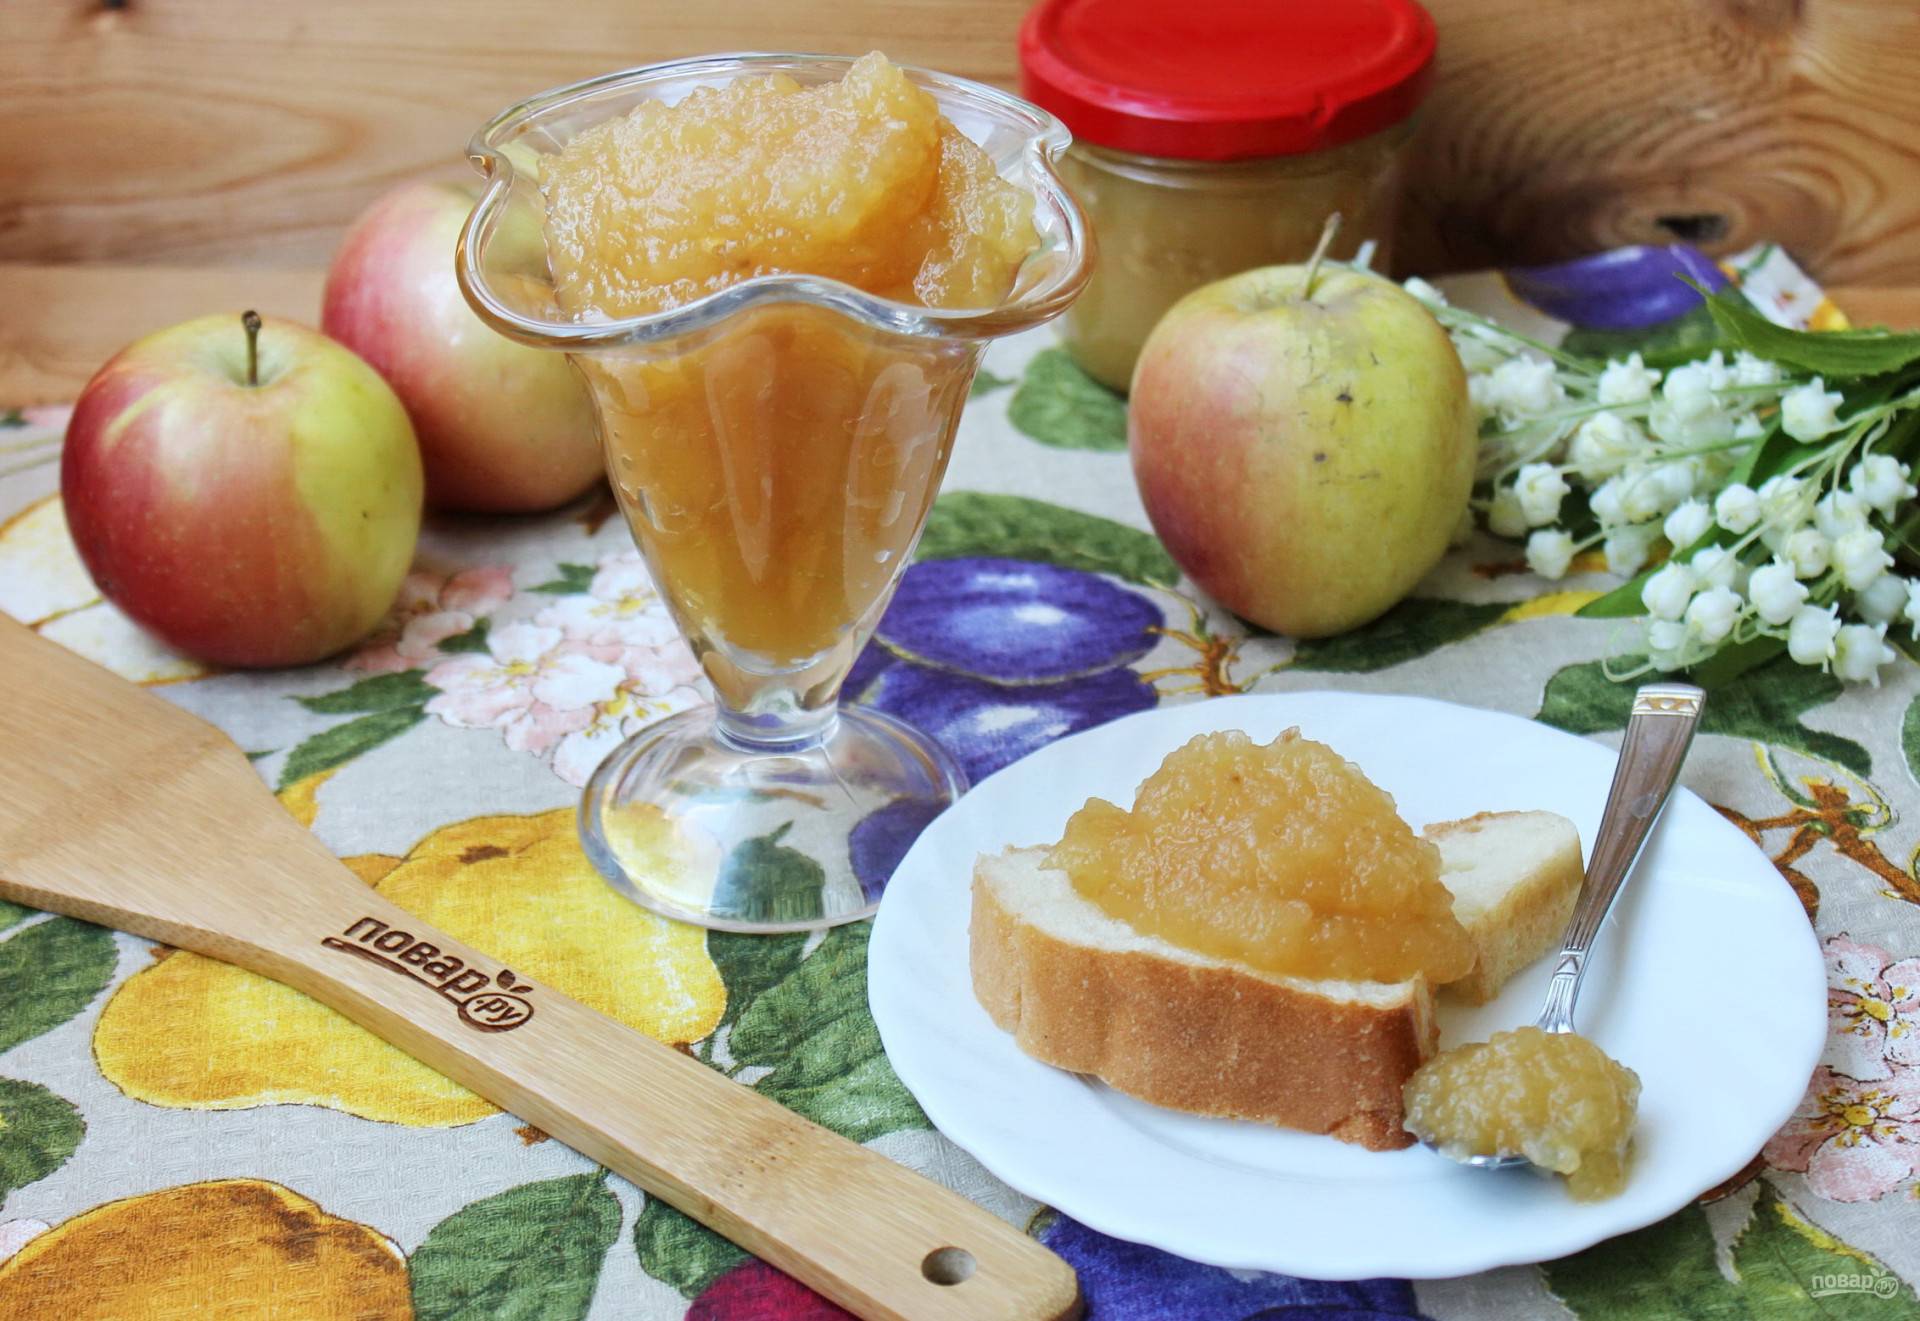 Густое повидло из яблок в домашних условиях — простые рецепты на зиму